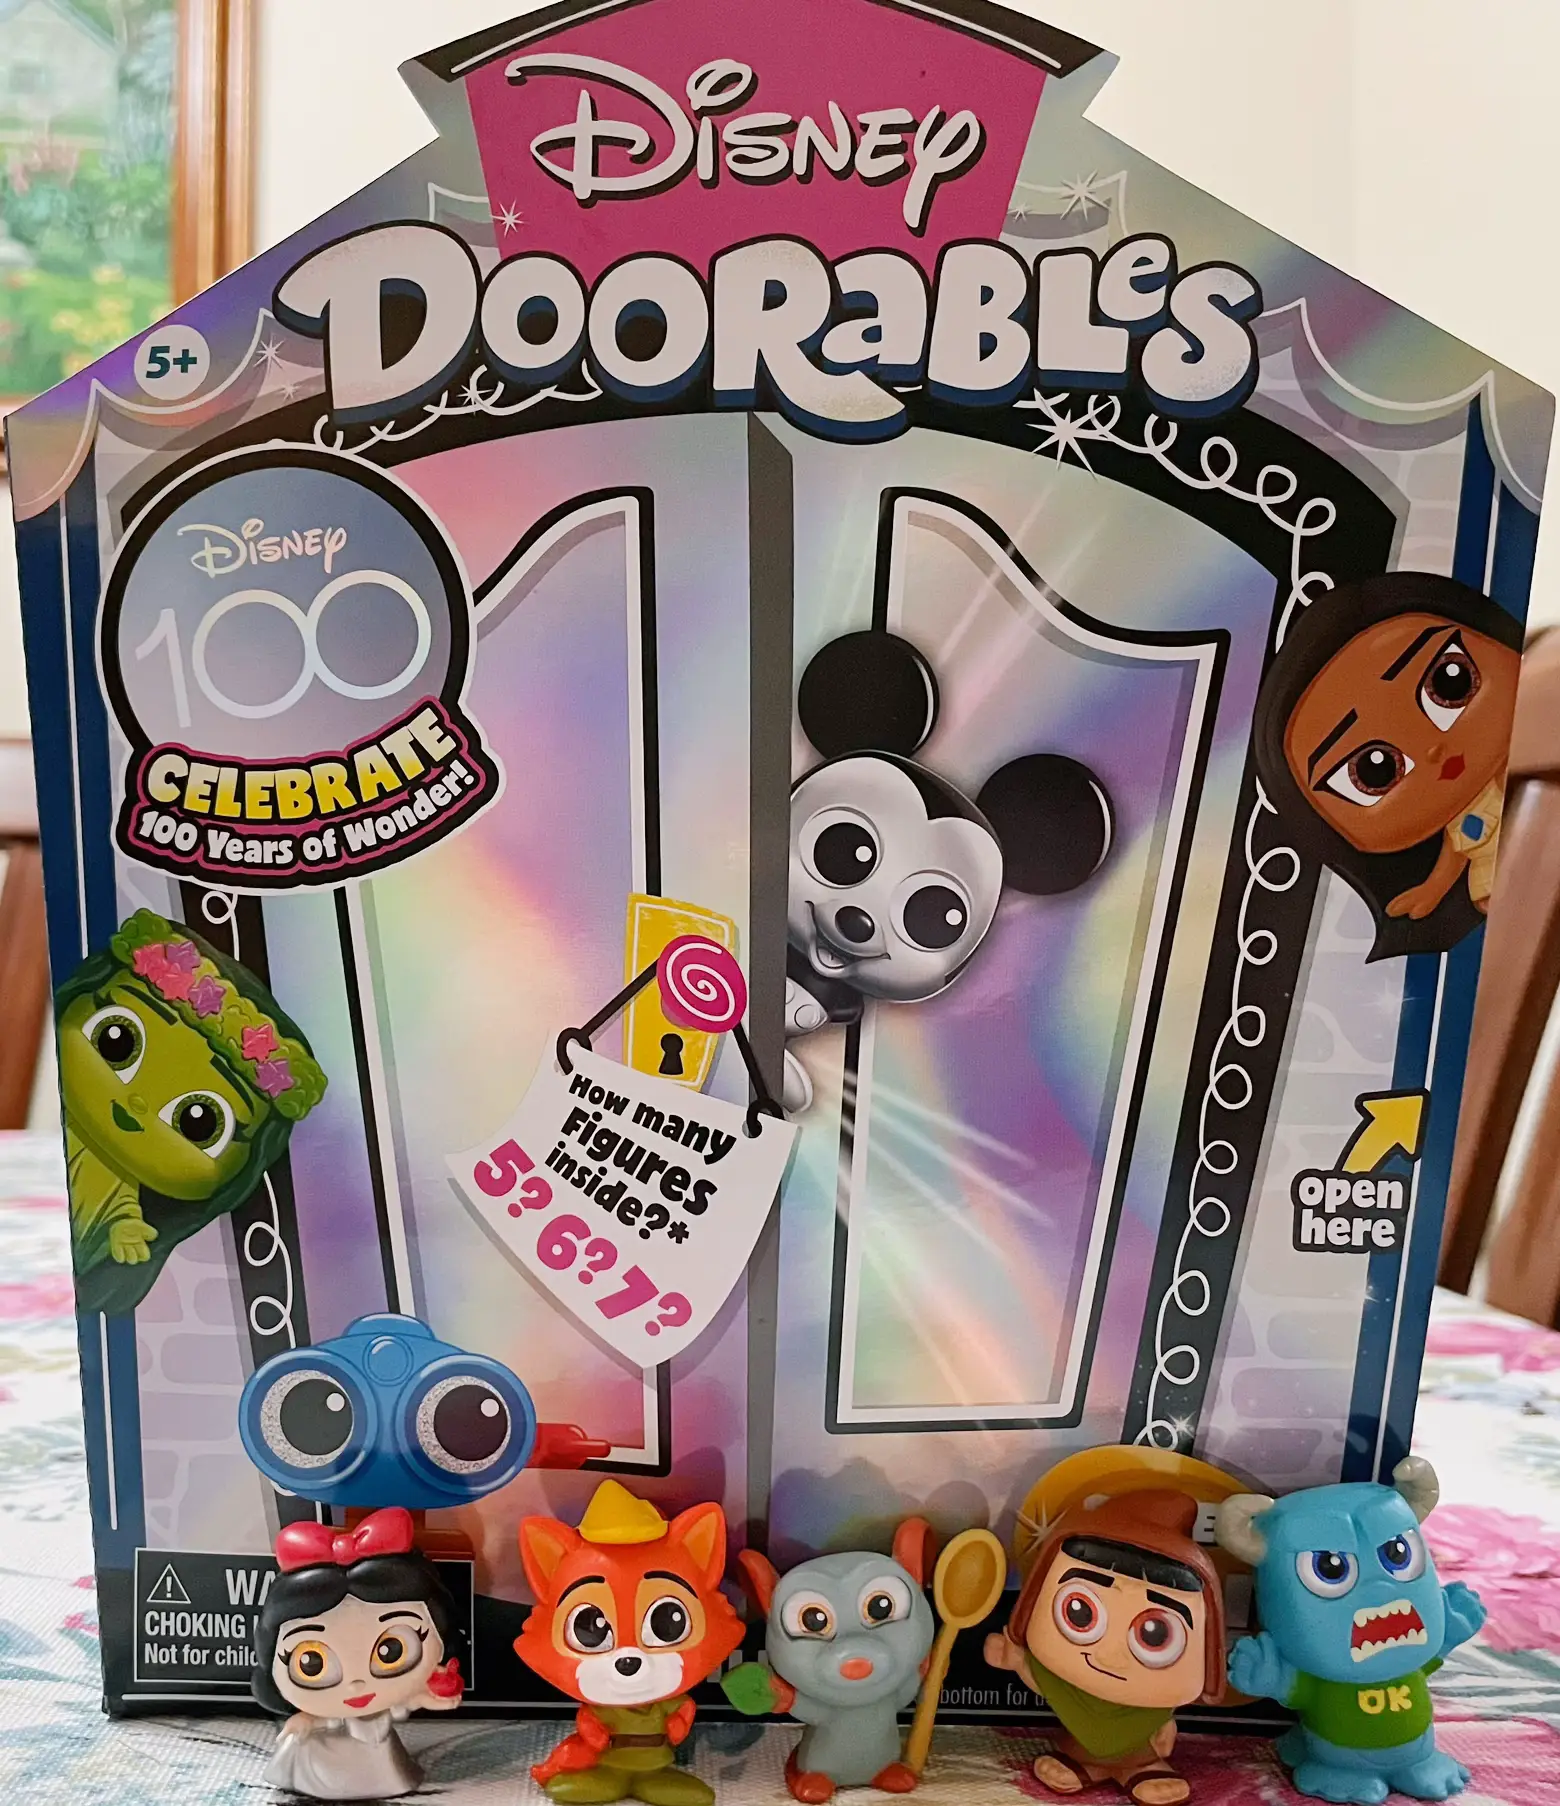 Disney 100 Years of Wonder Doorables